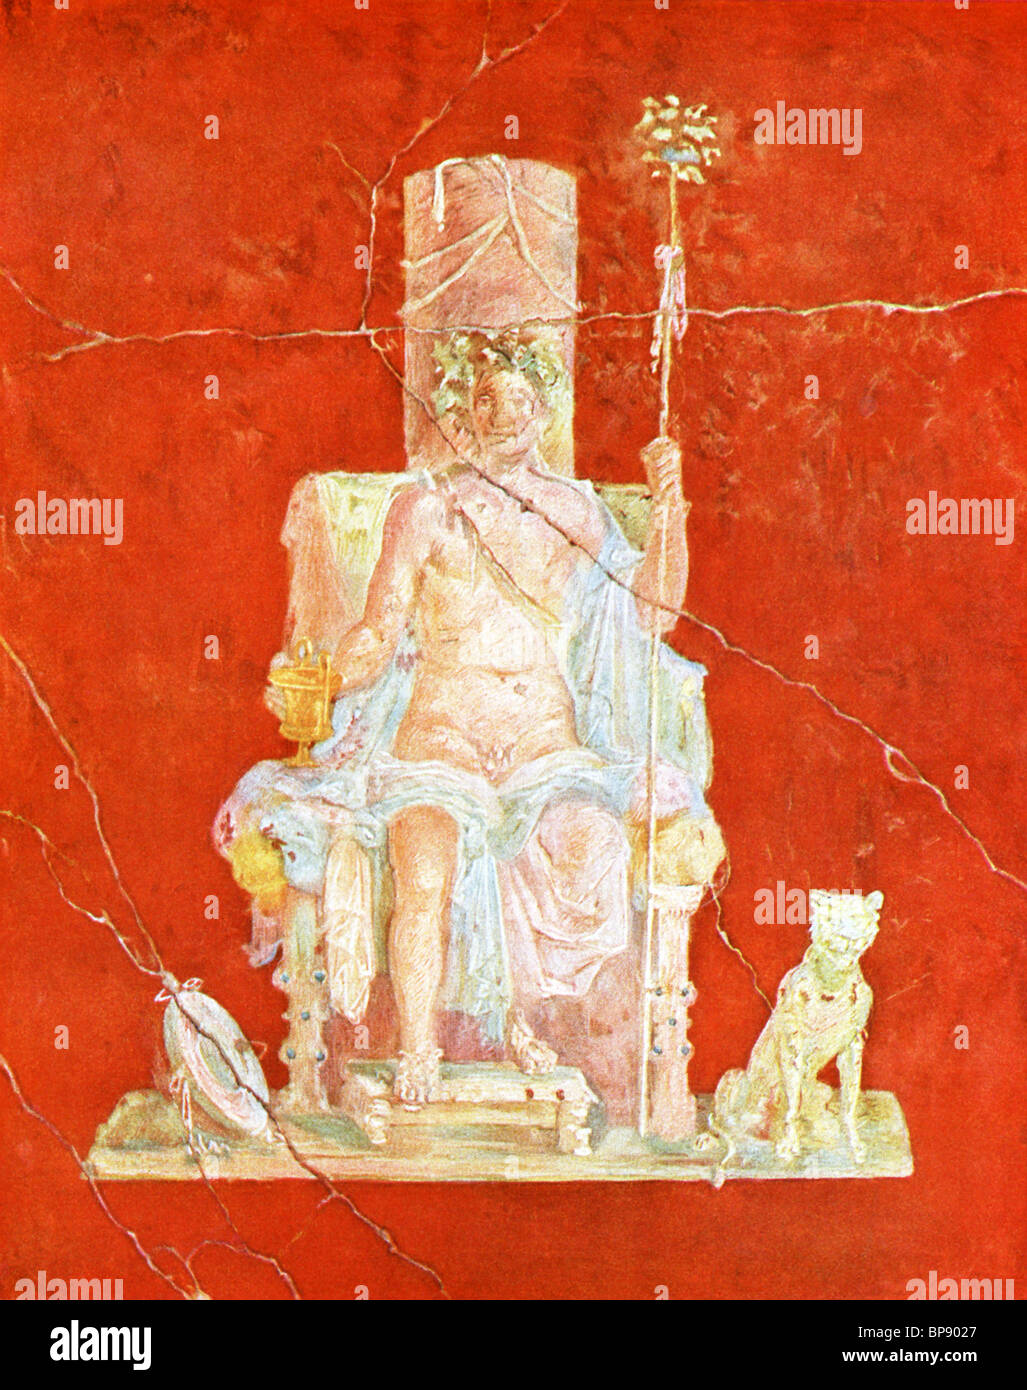 Cette peinture murale montrant Dionysos intronisé, avec un chien assis à côté du trône, a été trouvé dans la maison de Pompéi du Naviglio. Banque D'Images